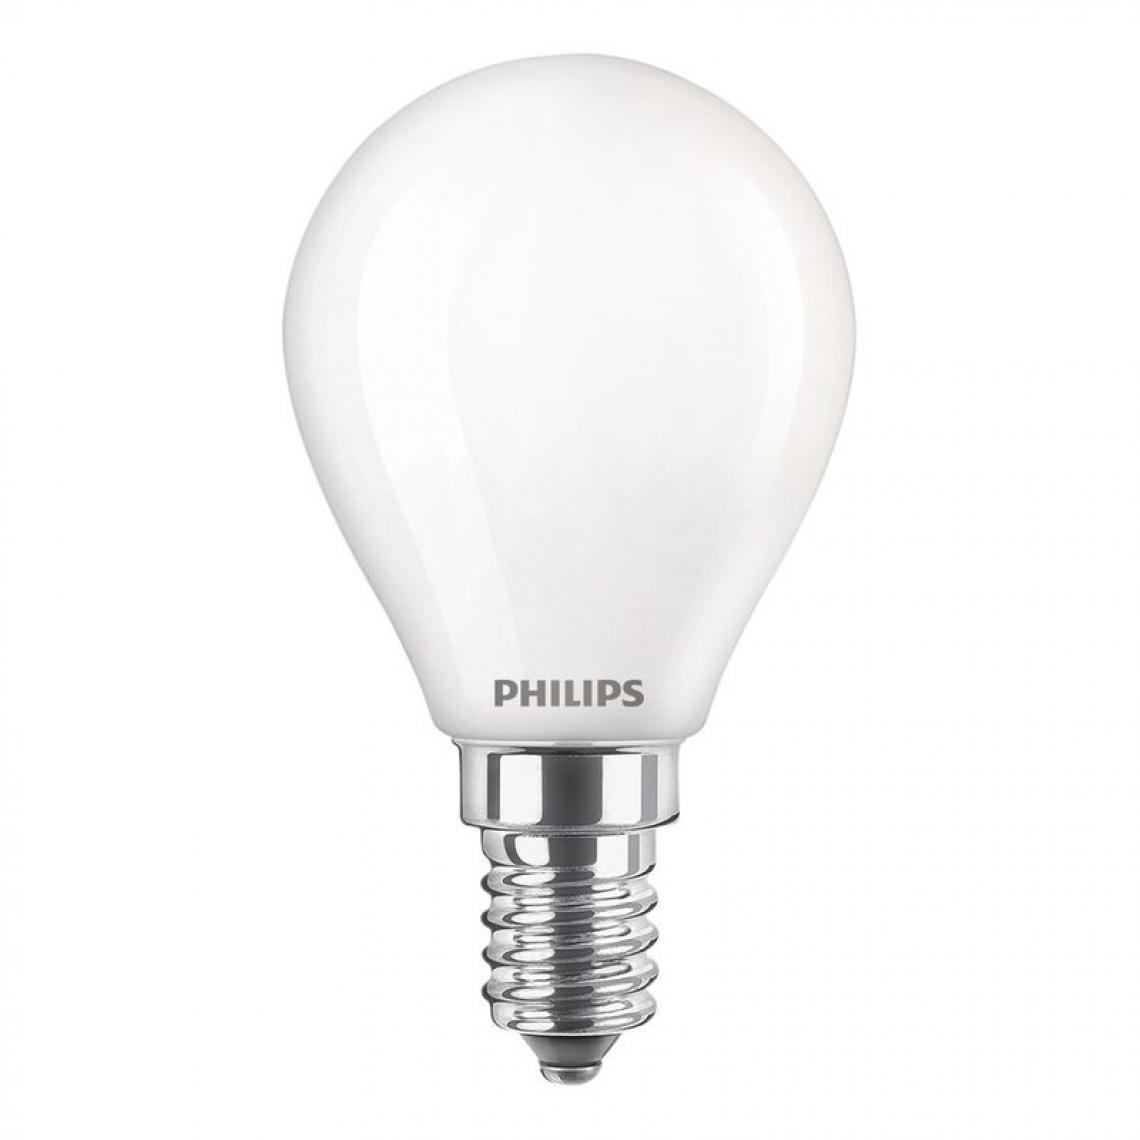 Philips - Ampoule LED E14 sphérique PHILIPS EQ60W blanc chaud - Ampoules LED